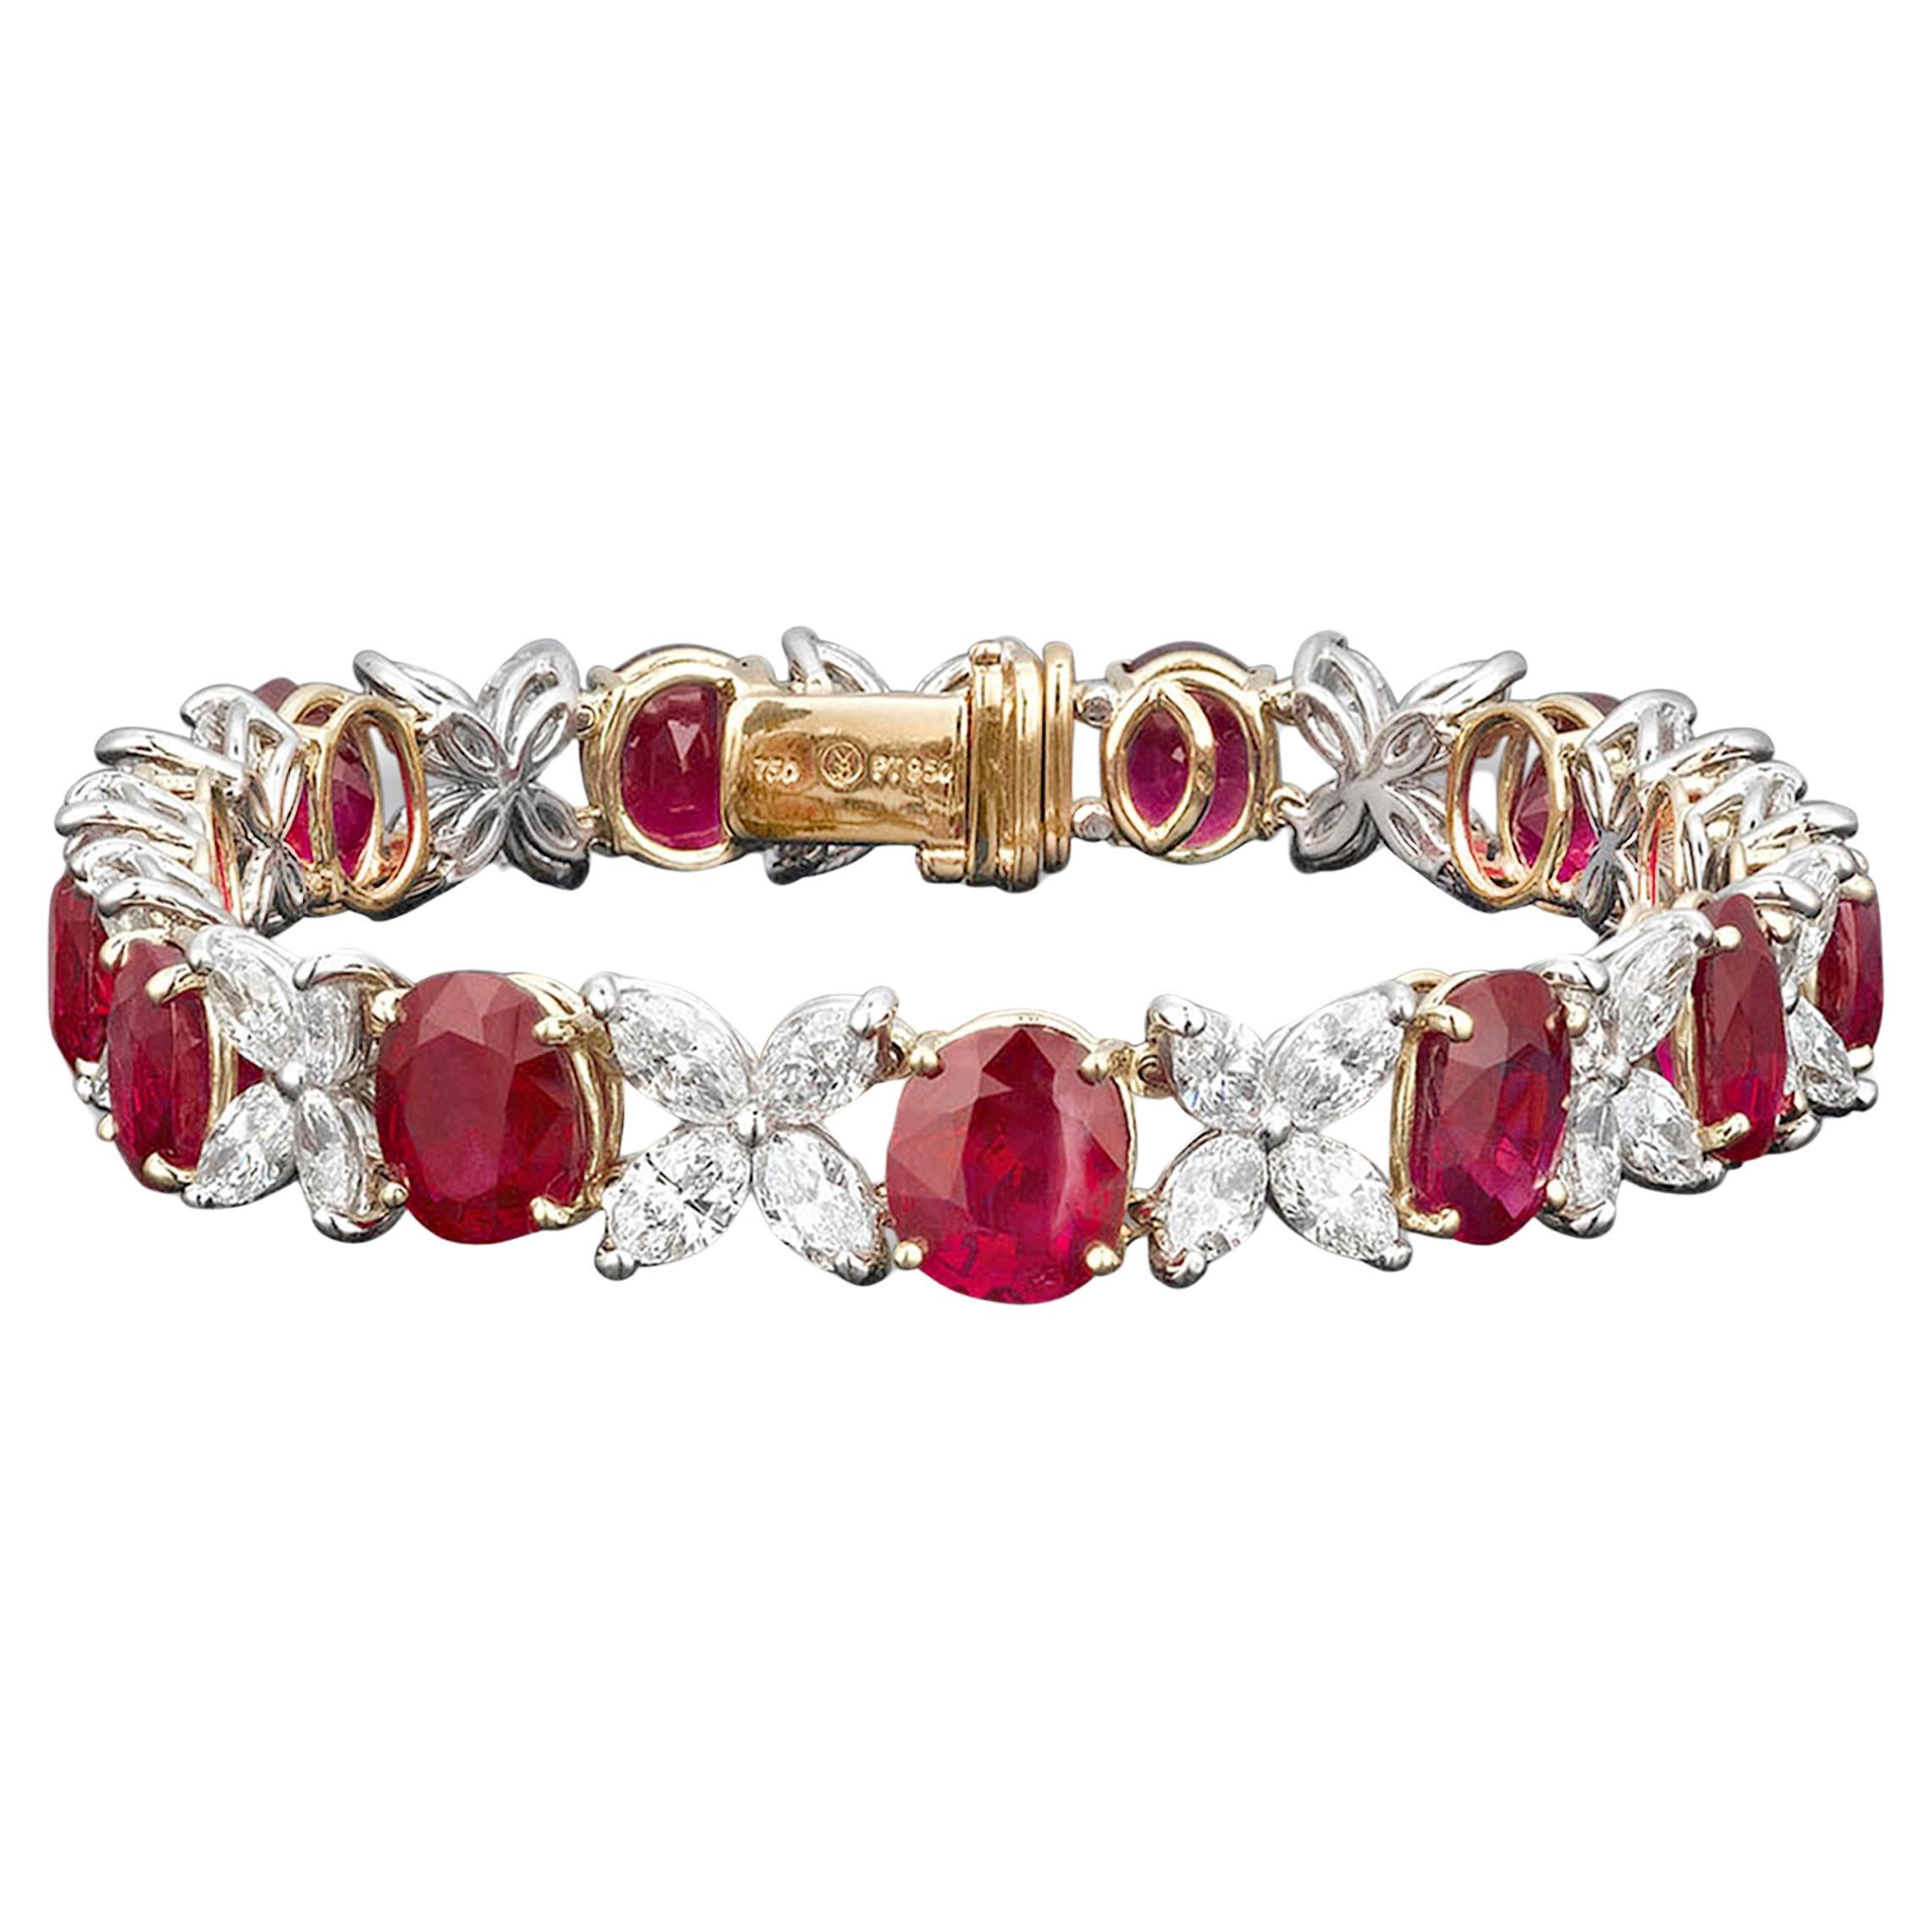 Bracelet en rubis de Birmanie non traité et diamants, 21,16 carats